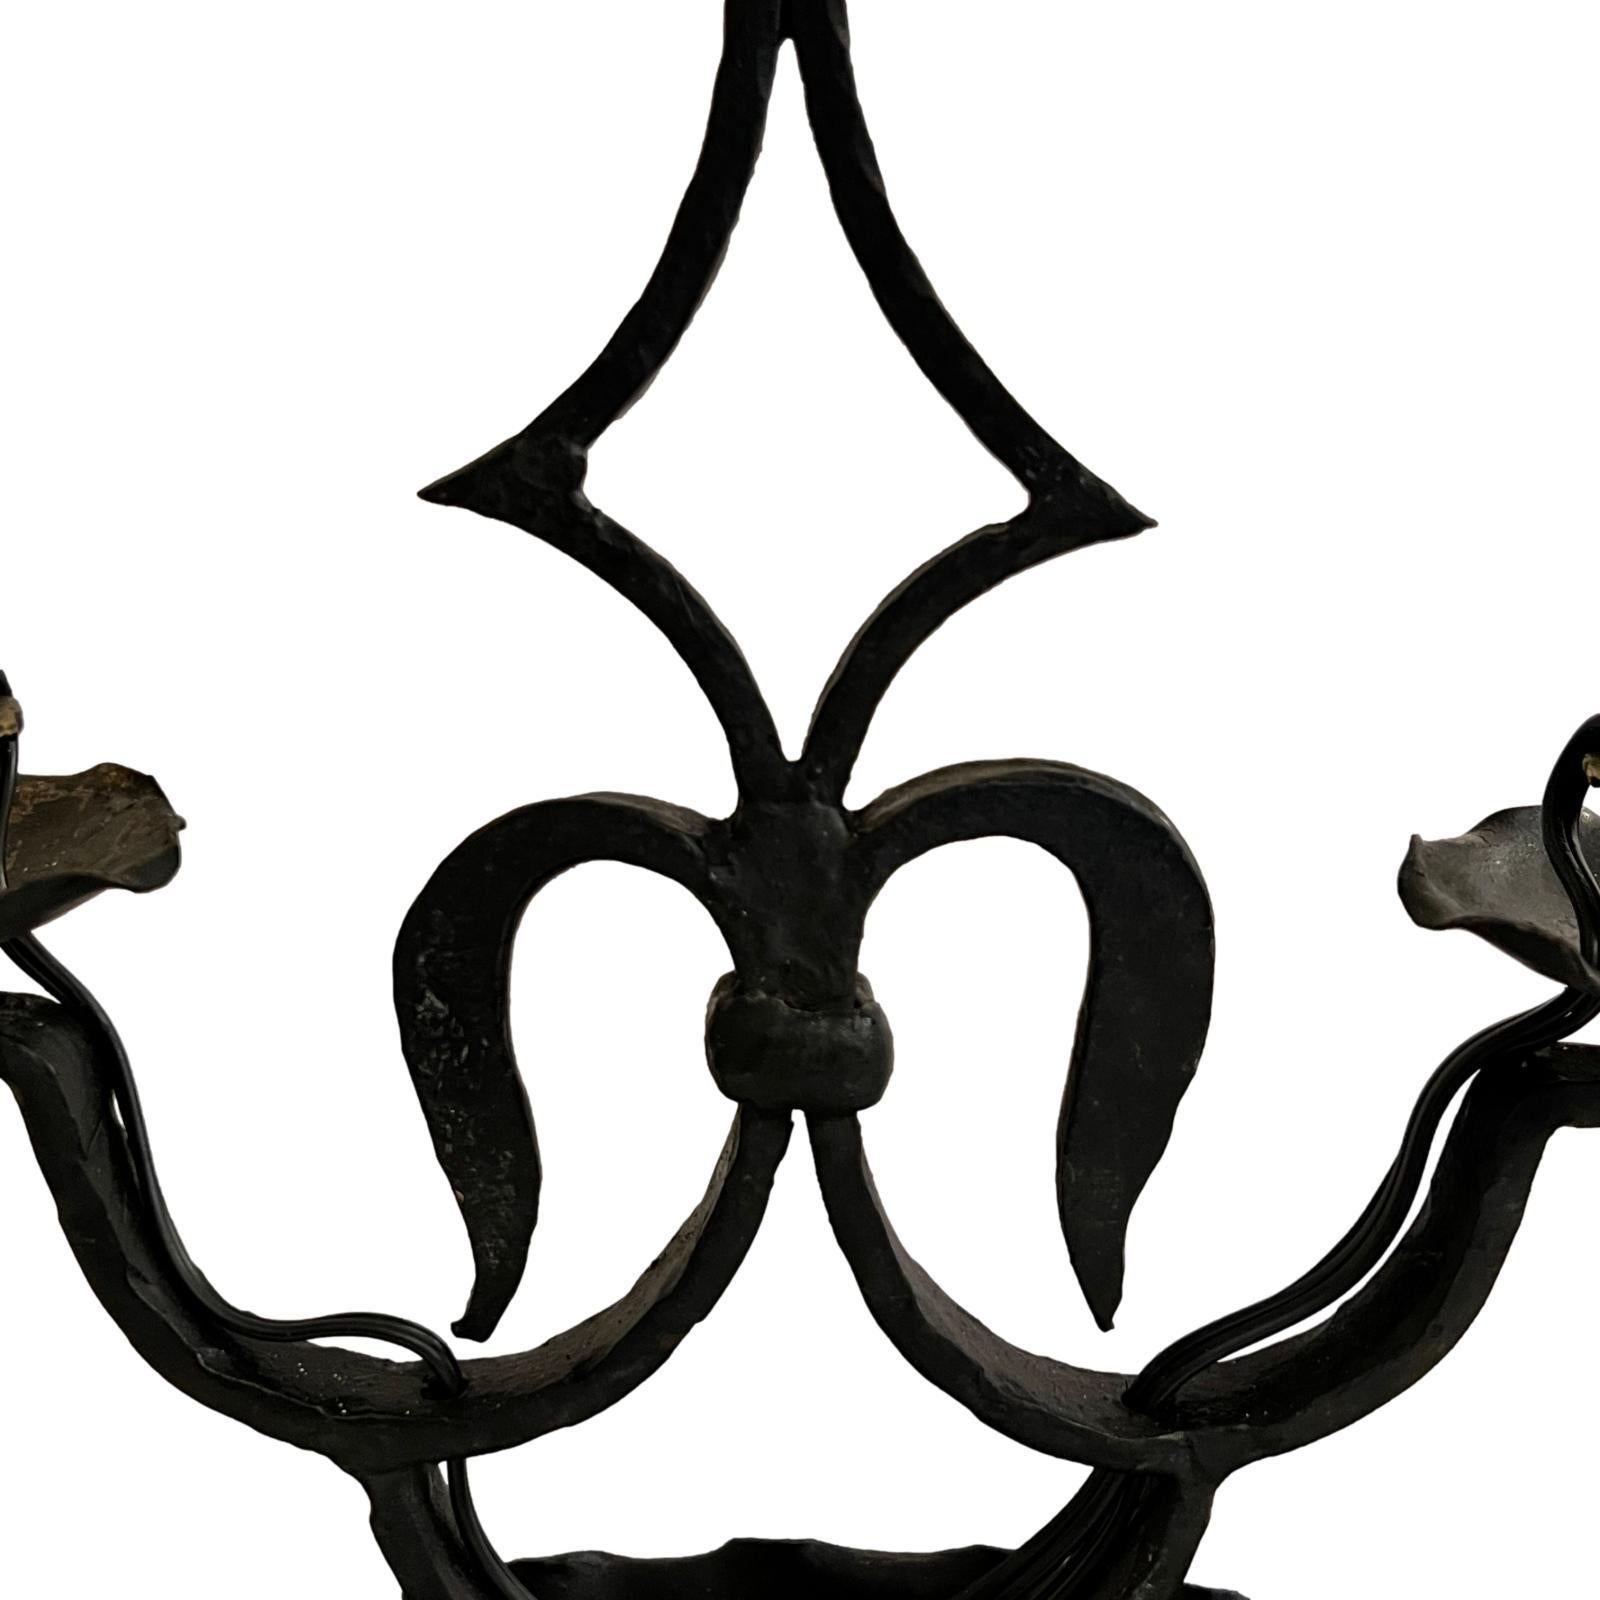 Lampe de table en fer forgé français des années 1920 avec abat-jour en métal peint.

Mesures :
Hauteur : 29